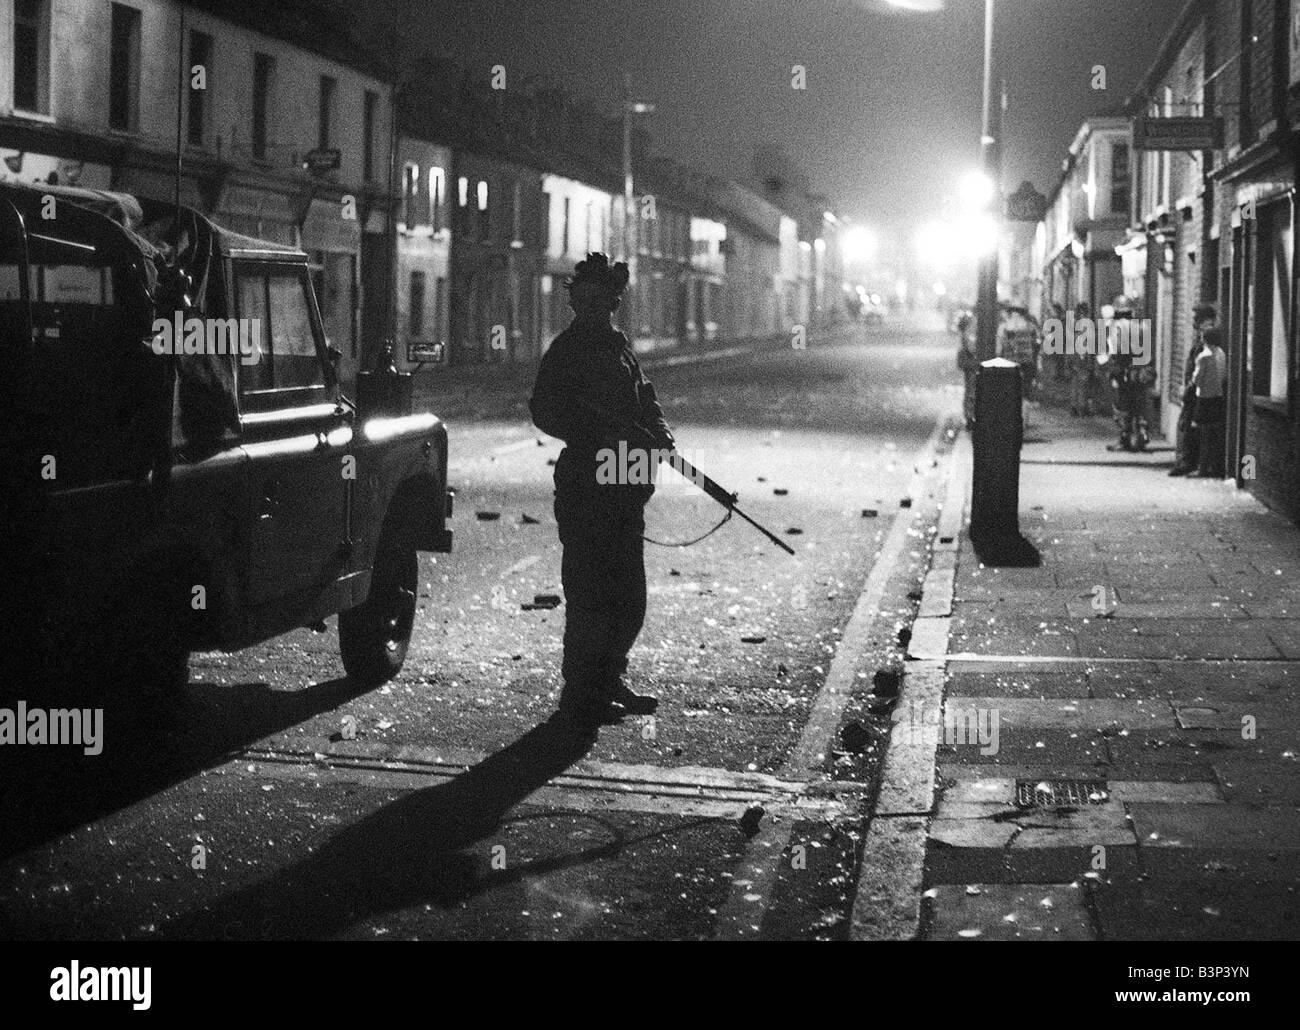 Soldados del ejército de las tropas británicas en Irlanda del Norte, de octubre de 1969 soldados patrullan los disturbios en 1969 los fanáticos unionista protestante promovió una serie de graves disturbios planificado previamente contra los católicos en agosto de 1969, los protestantes destrozó las calles de Belfast y Derry entraron en los barrios e incluso algunas casas del pueblo católico, el 12 de agosto los disturbios wereturned a las turbas naranja de la UVF tocaron las nubes de gas lacrimógeno a través de los barrios católicos el 14 de agosto, los católicos se rebelaron a través de los dos días de violentos disturbios durante los dos días de Foto de stock